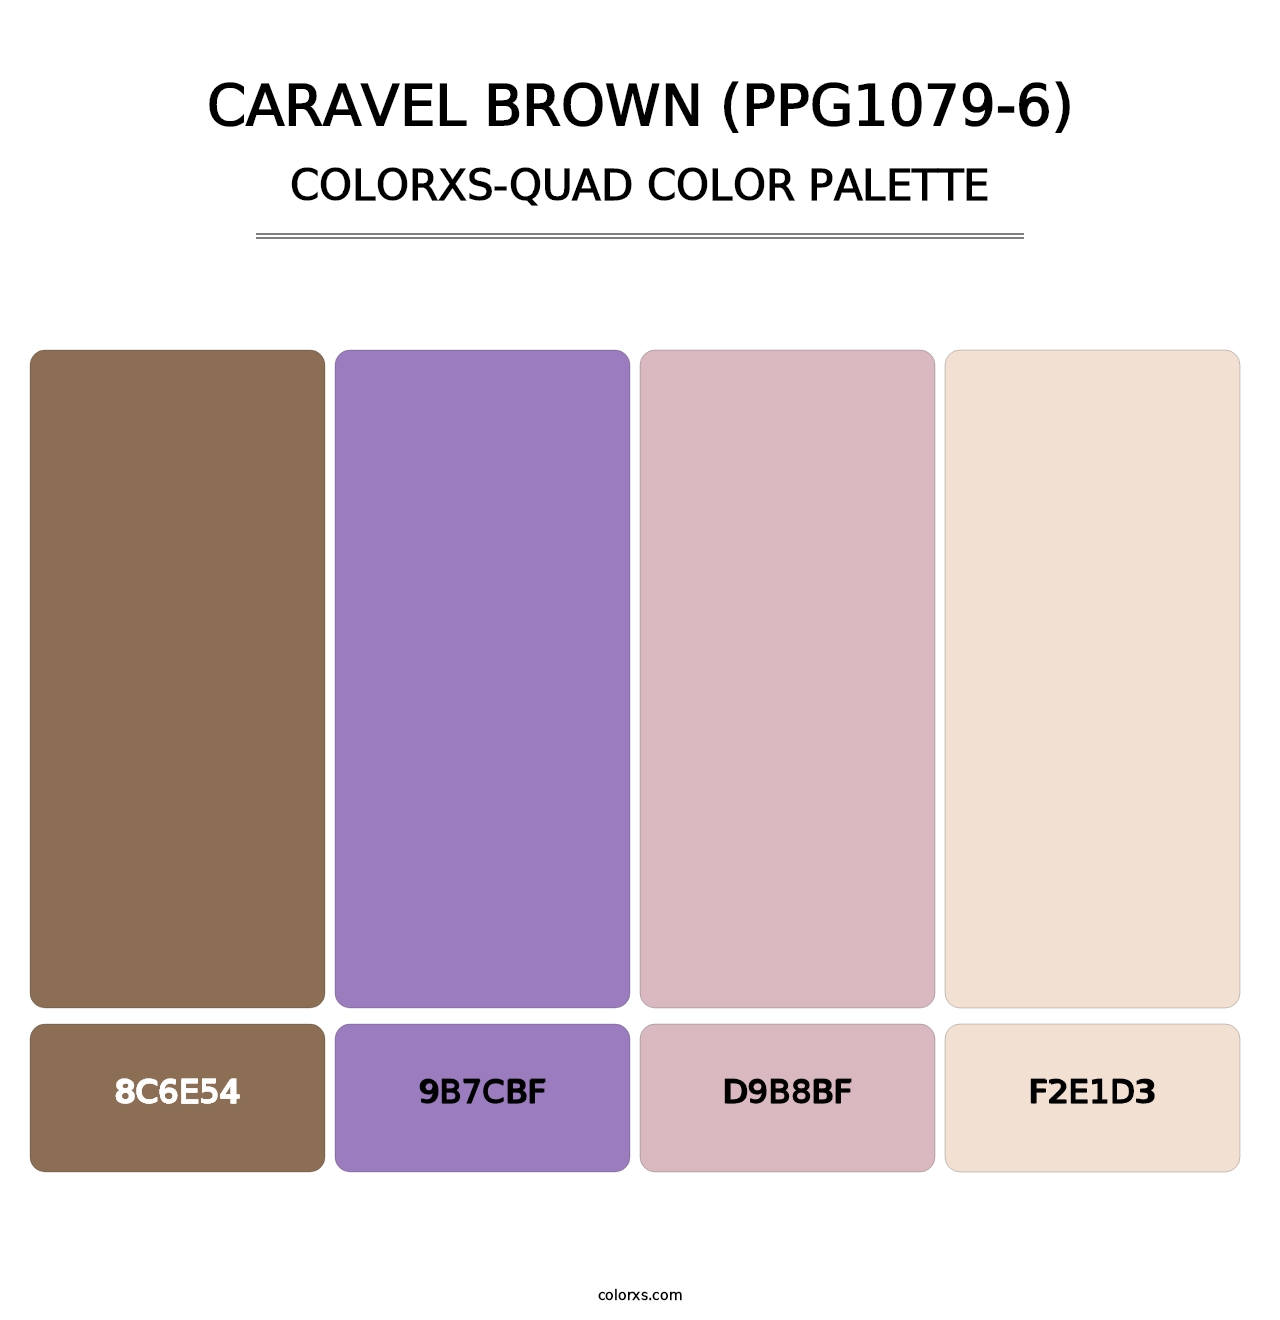 Caravel Brown (PPG1079-6) - Colorxs Quad Palette